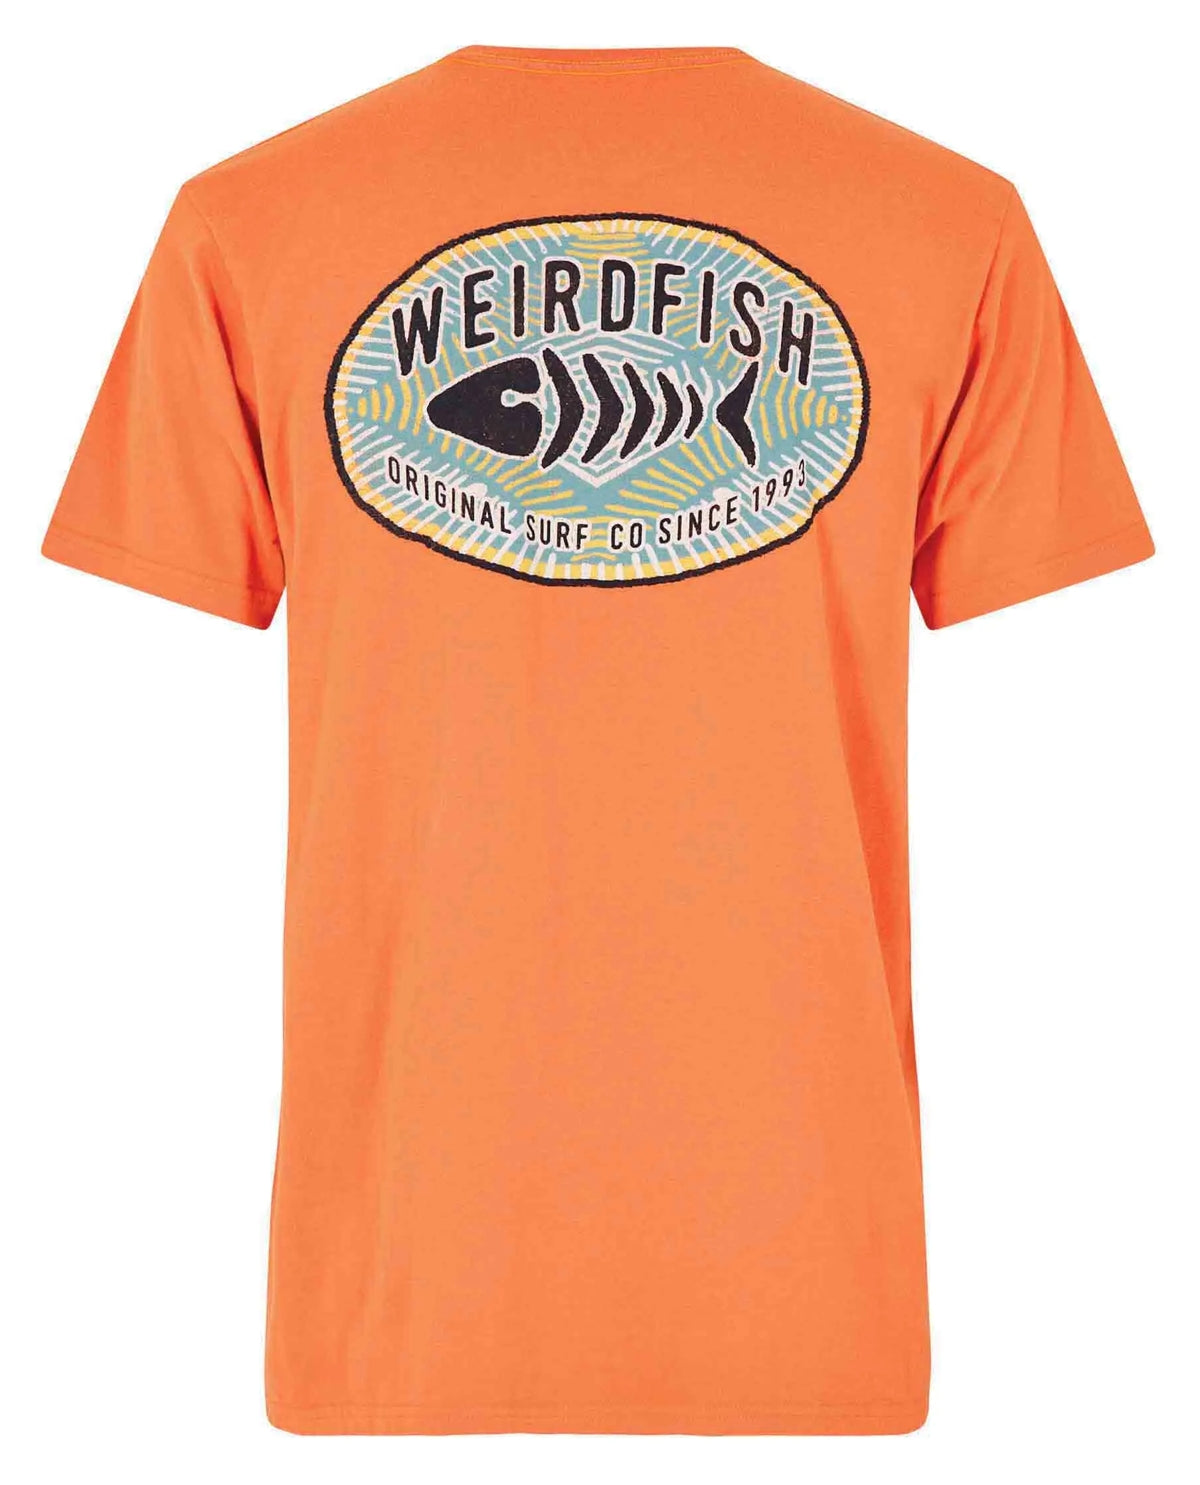 Original Surf print design men's tee from Weird Fish in Mango Orange.